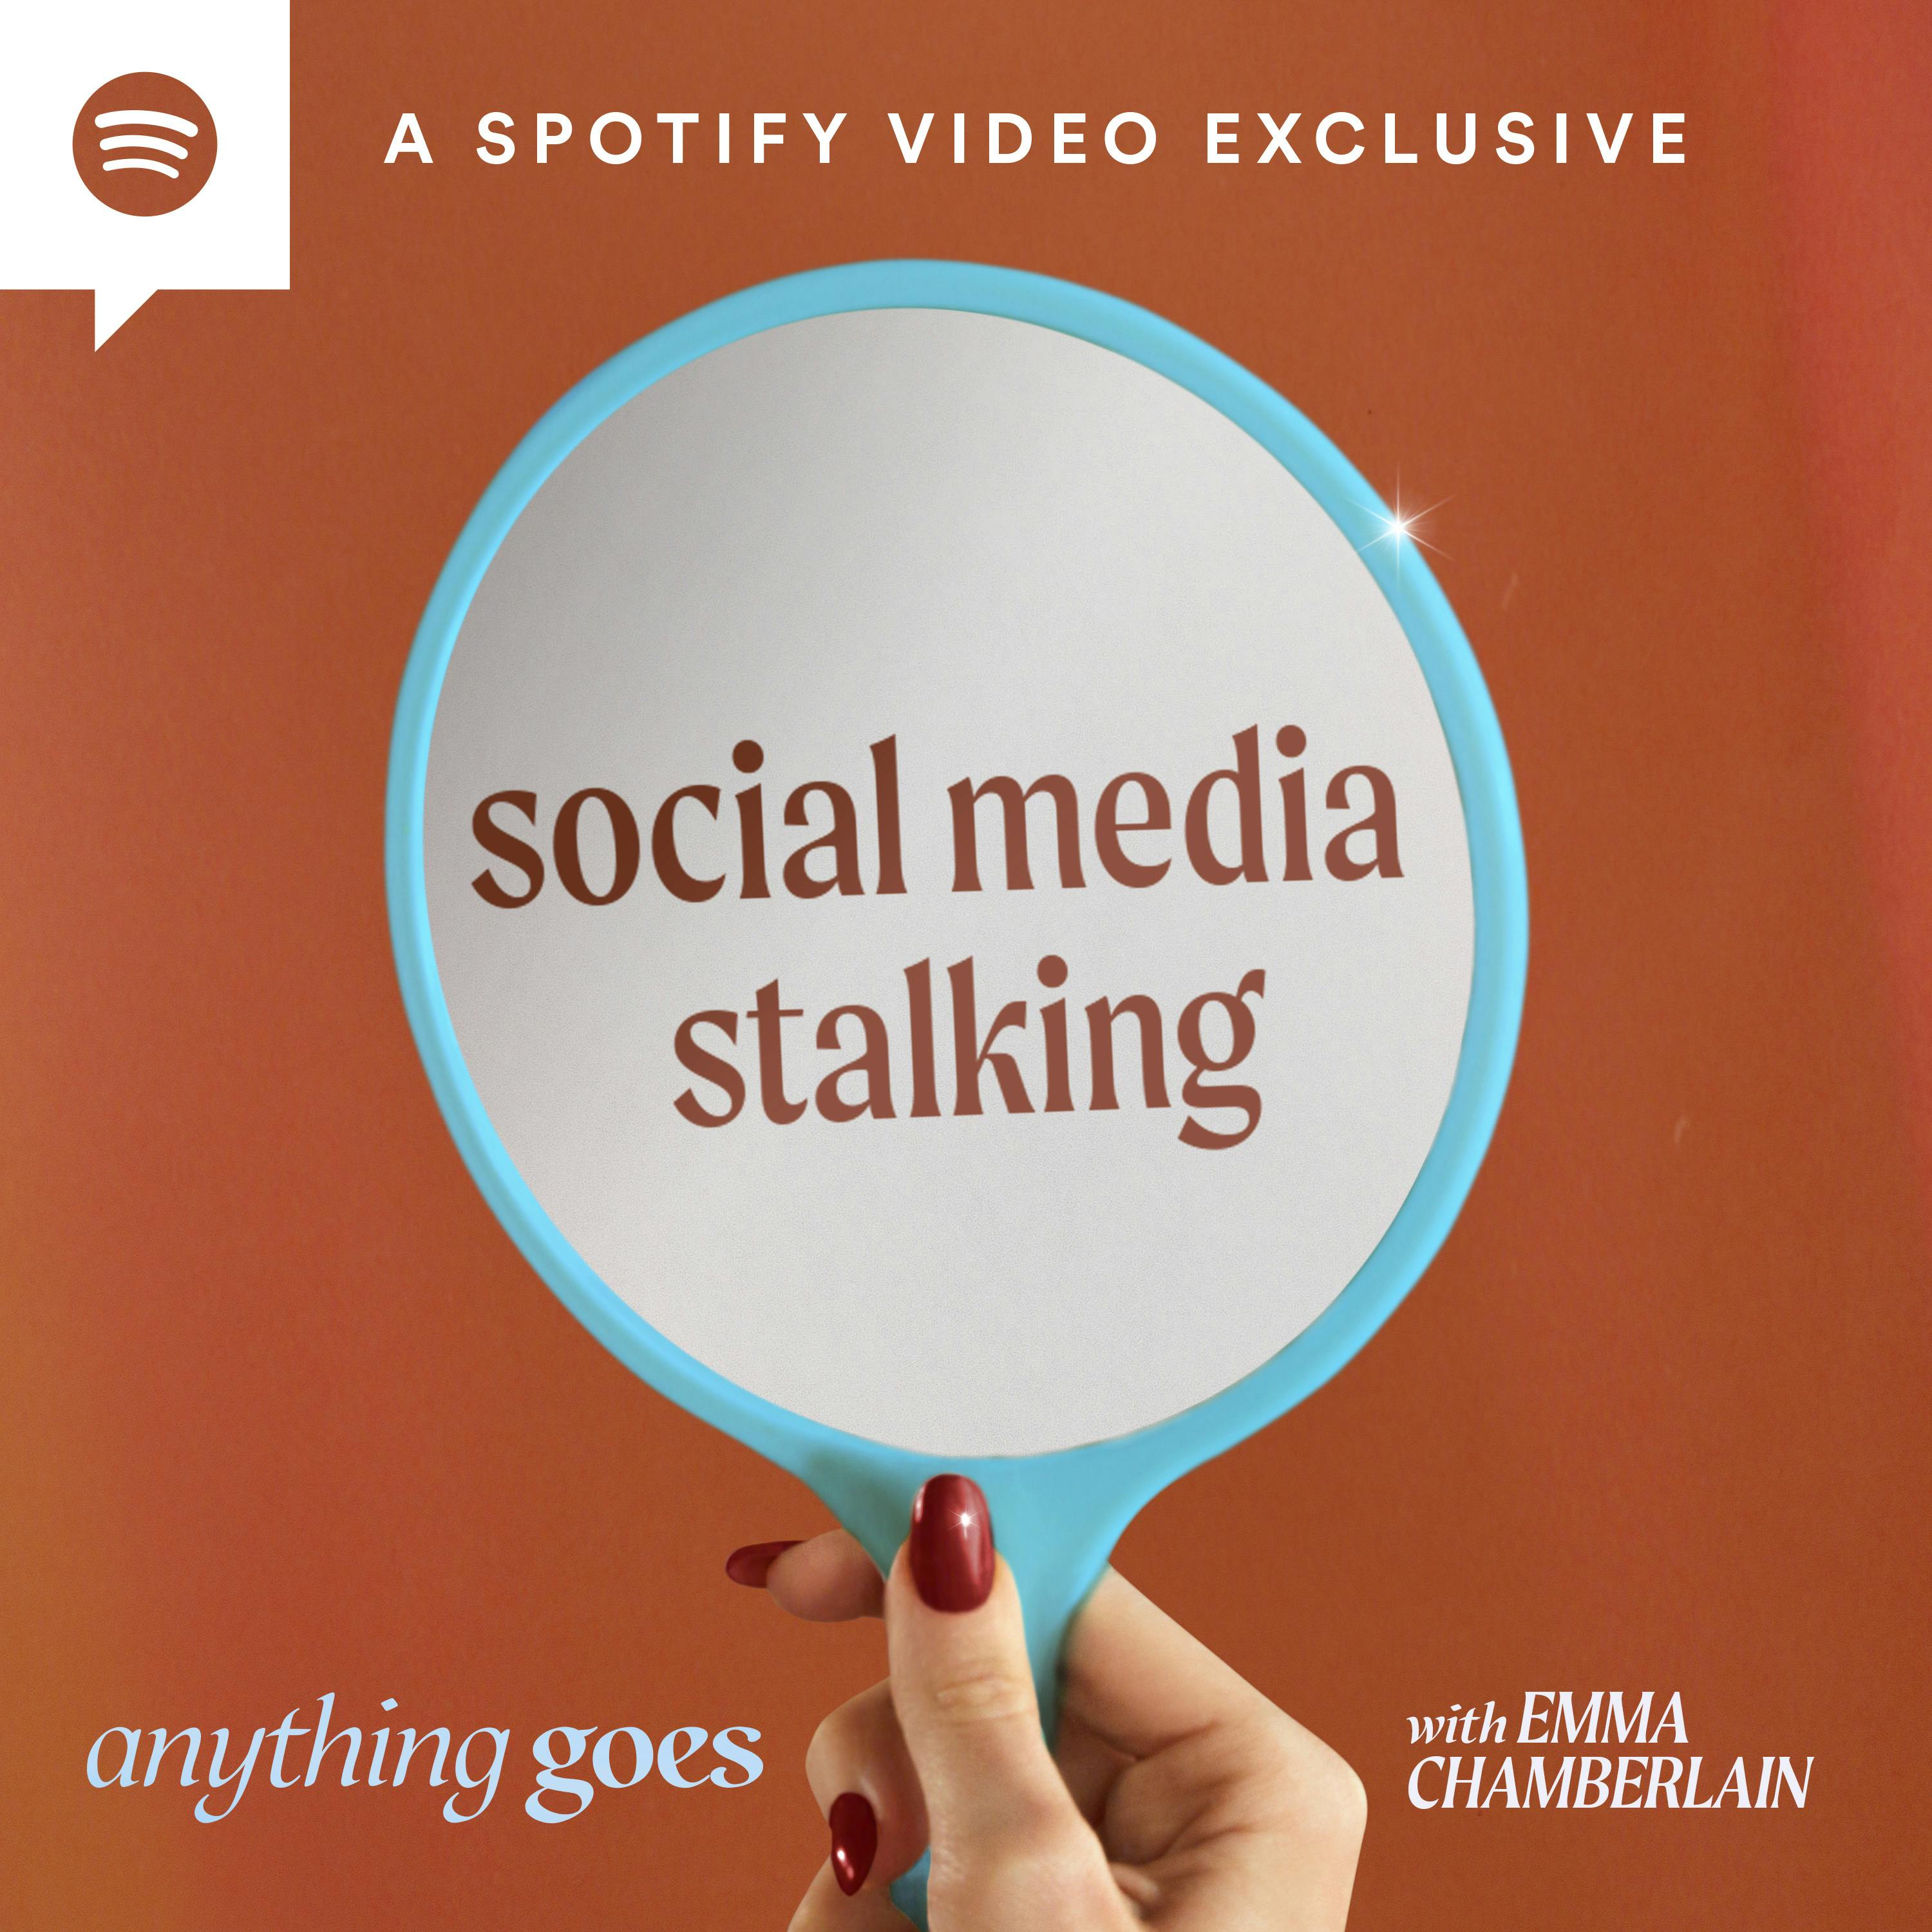 social media stalking [video]